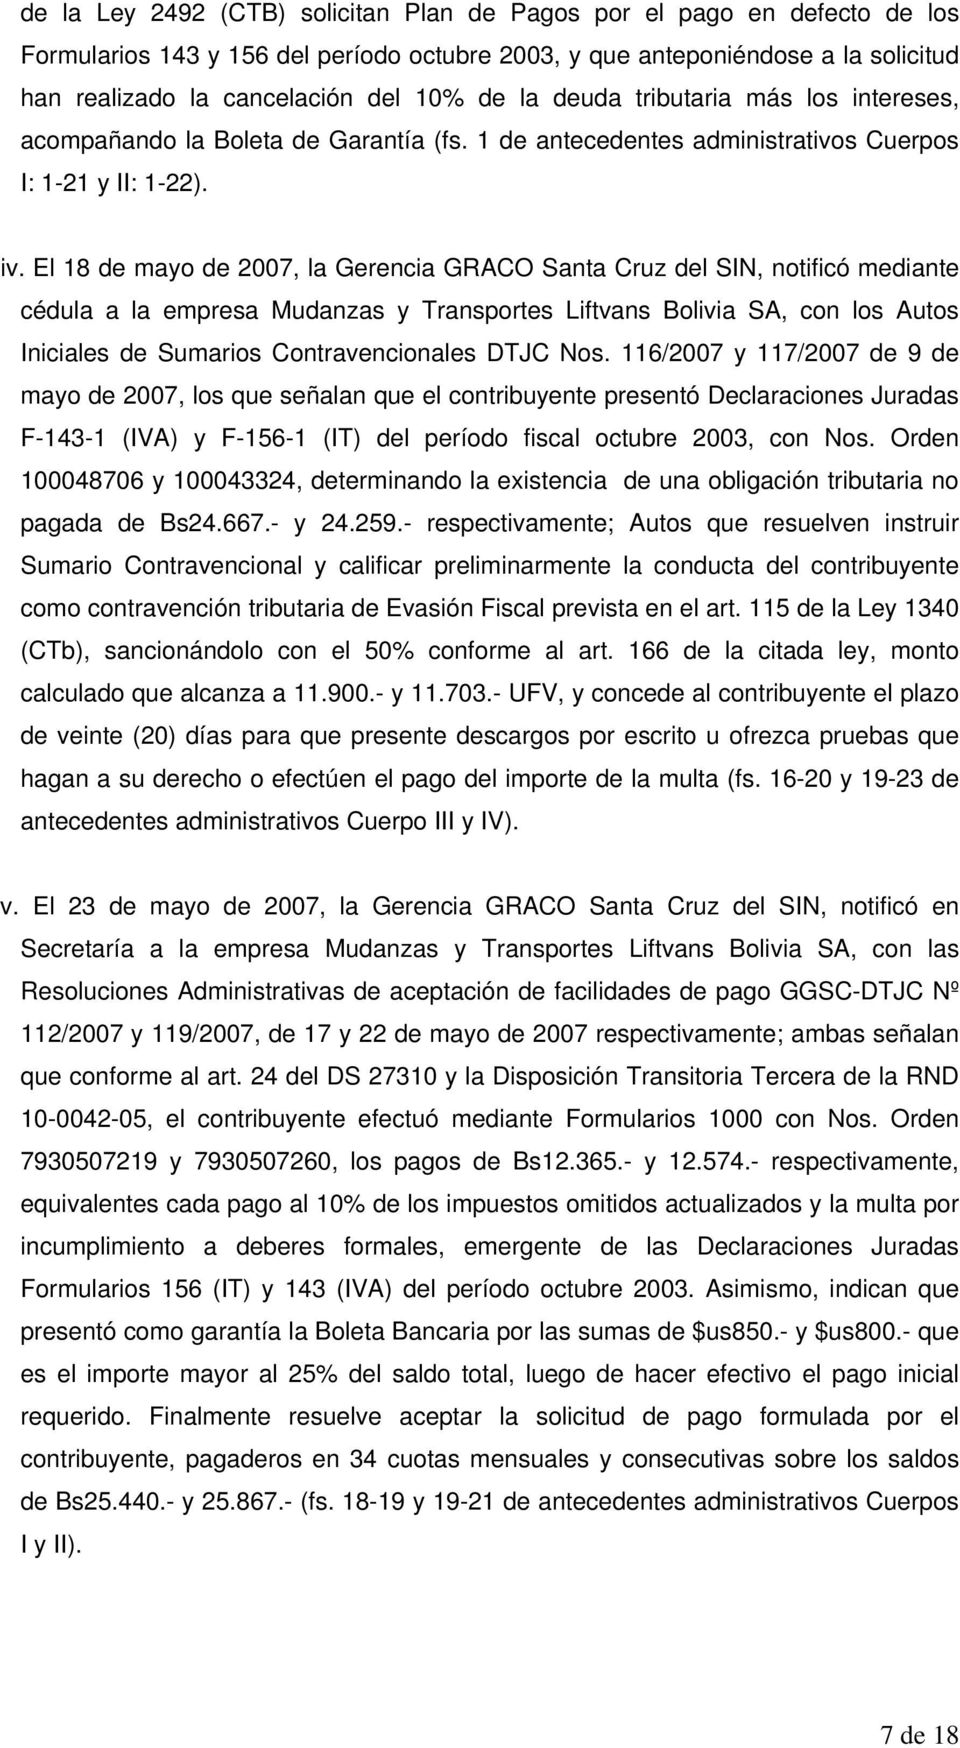 El 18 de mayo de 2007, la Gerencia GRACO Santa Cruz del SIN, notificó mediante cédula a la empresa Mudanzas y Transportes Liftvans Bolivia SA, con los Autos Iniciales de Sumarios Contravencionales